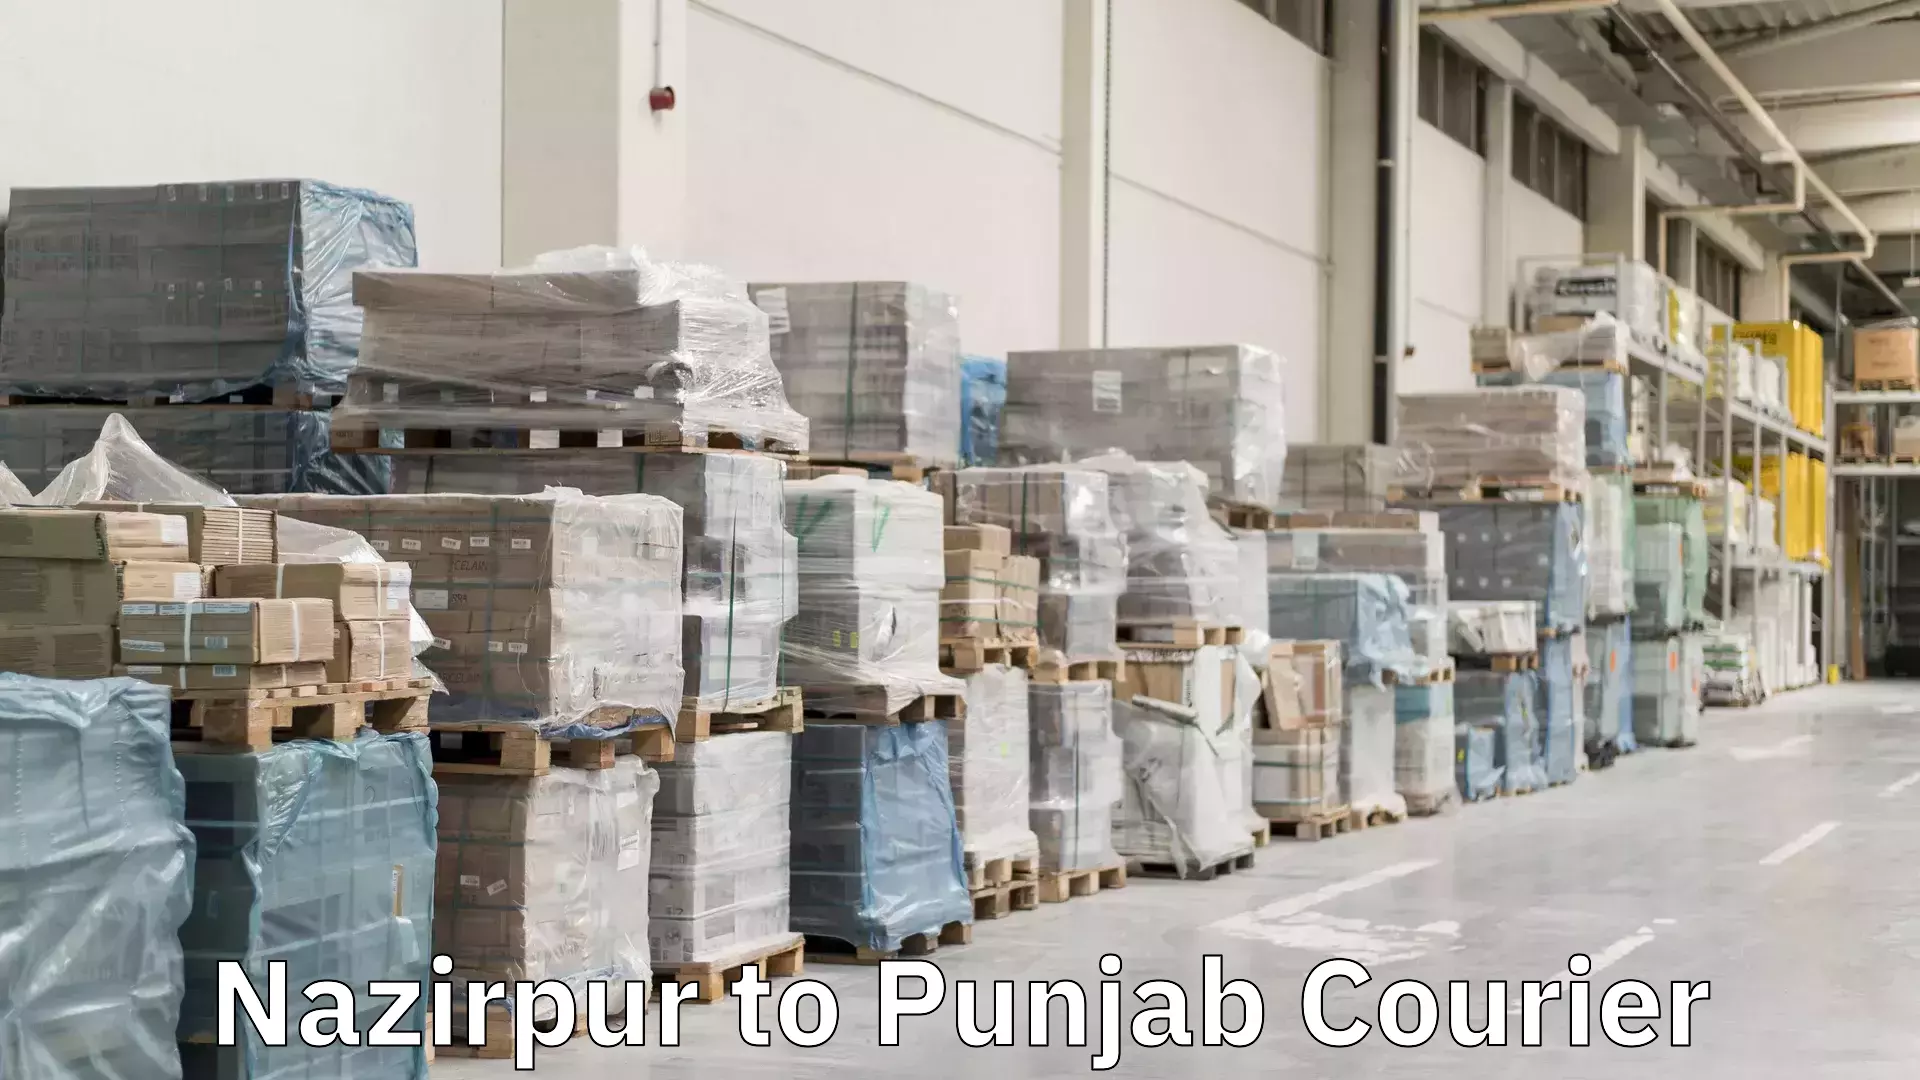 Efficient shipping platforms Nazirpur to Punjab